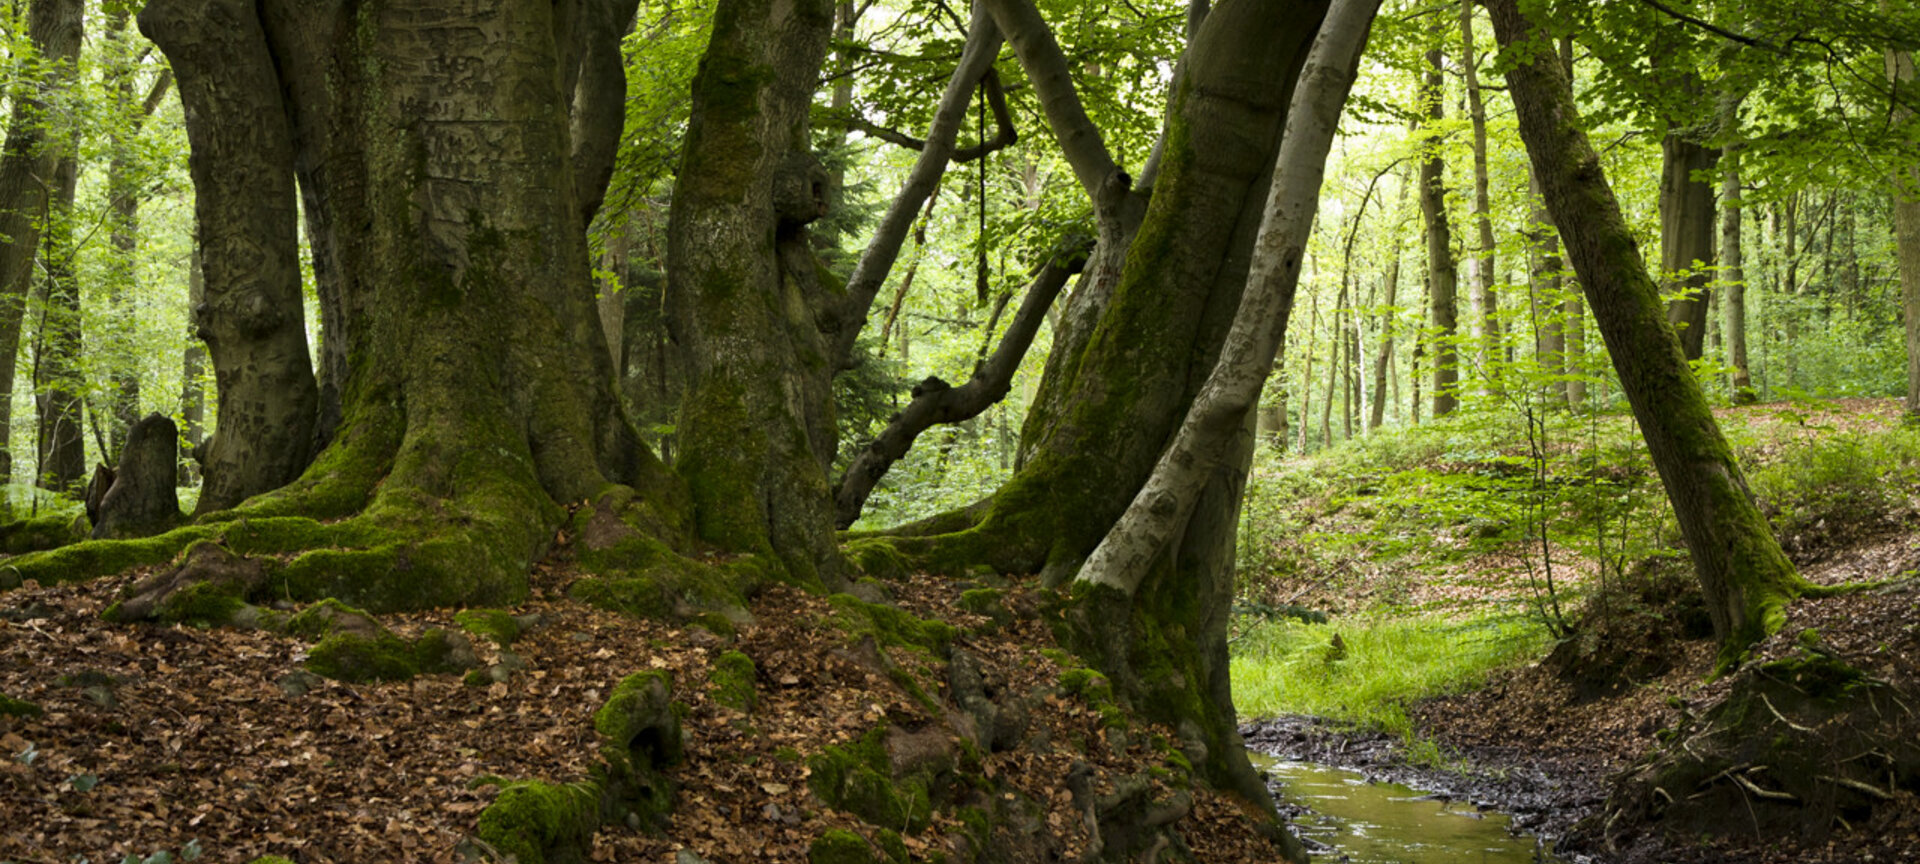 Wandelgebied Lieteberg - Geniet van de stilte in het bos